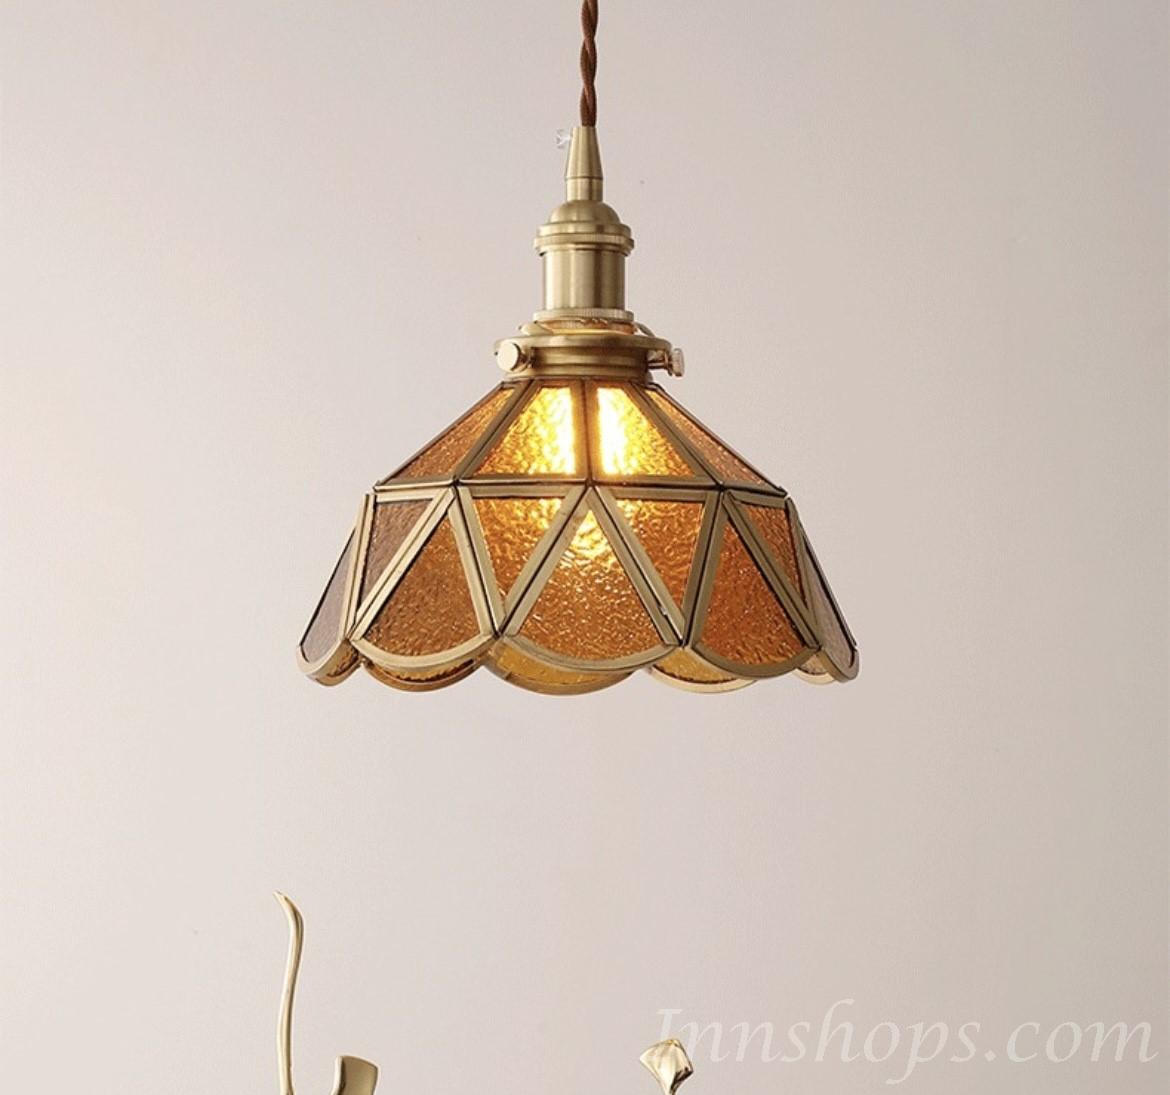 玻璃復古黃銅吊燈 (IS3929)